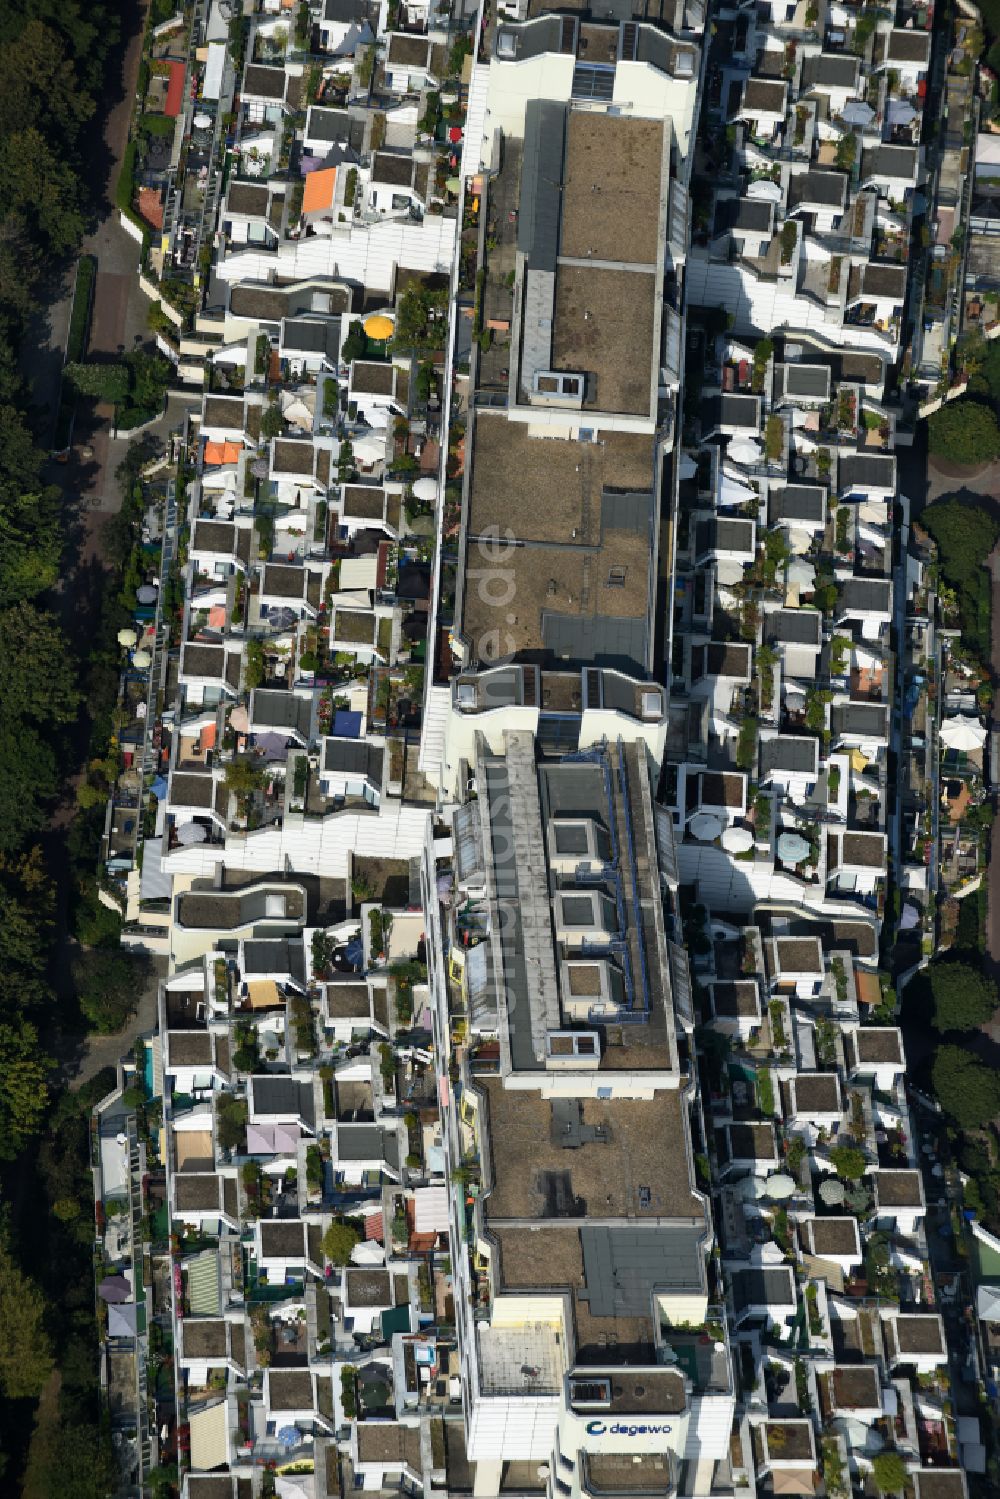 Luftbild Berlin - Dachgarten - Landschaft im Wohngebiet einer Mehrfamilienhaussiedlung in Berlin